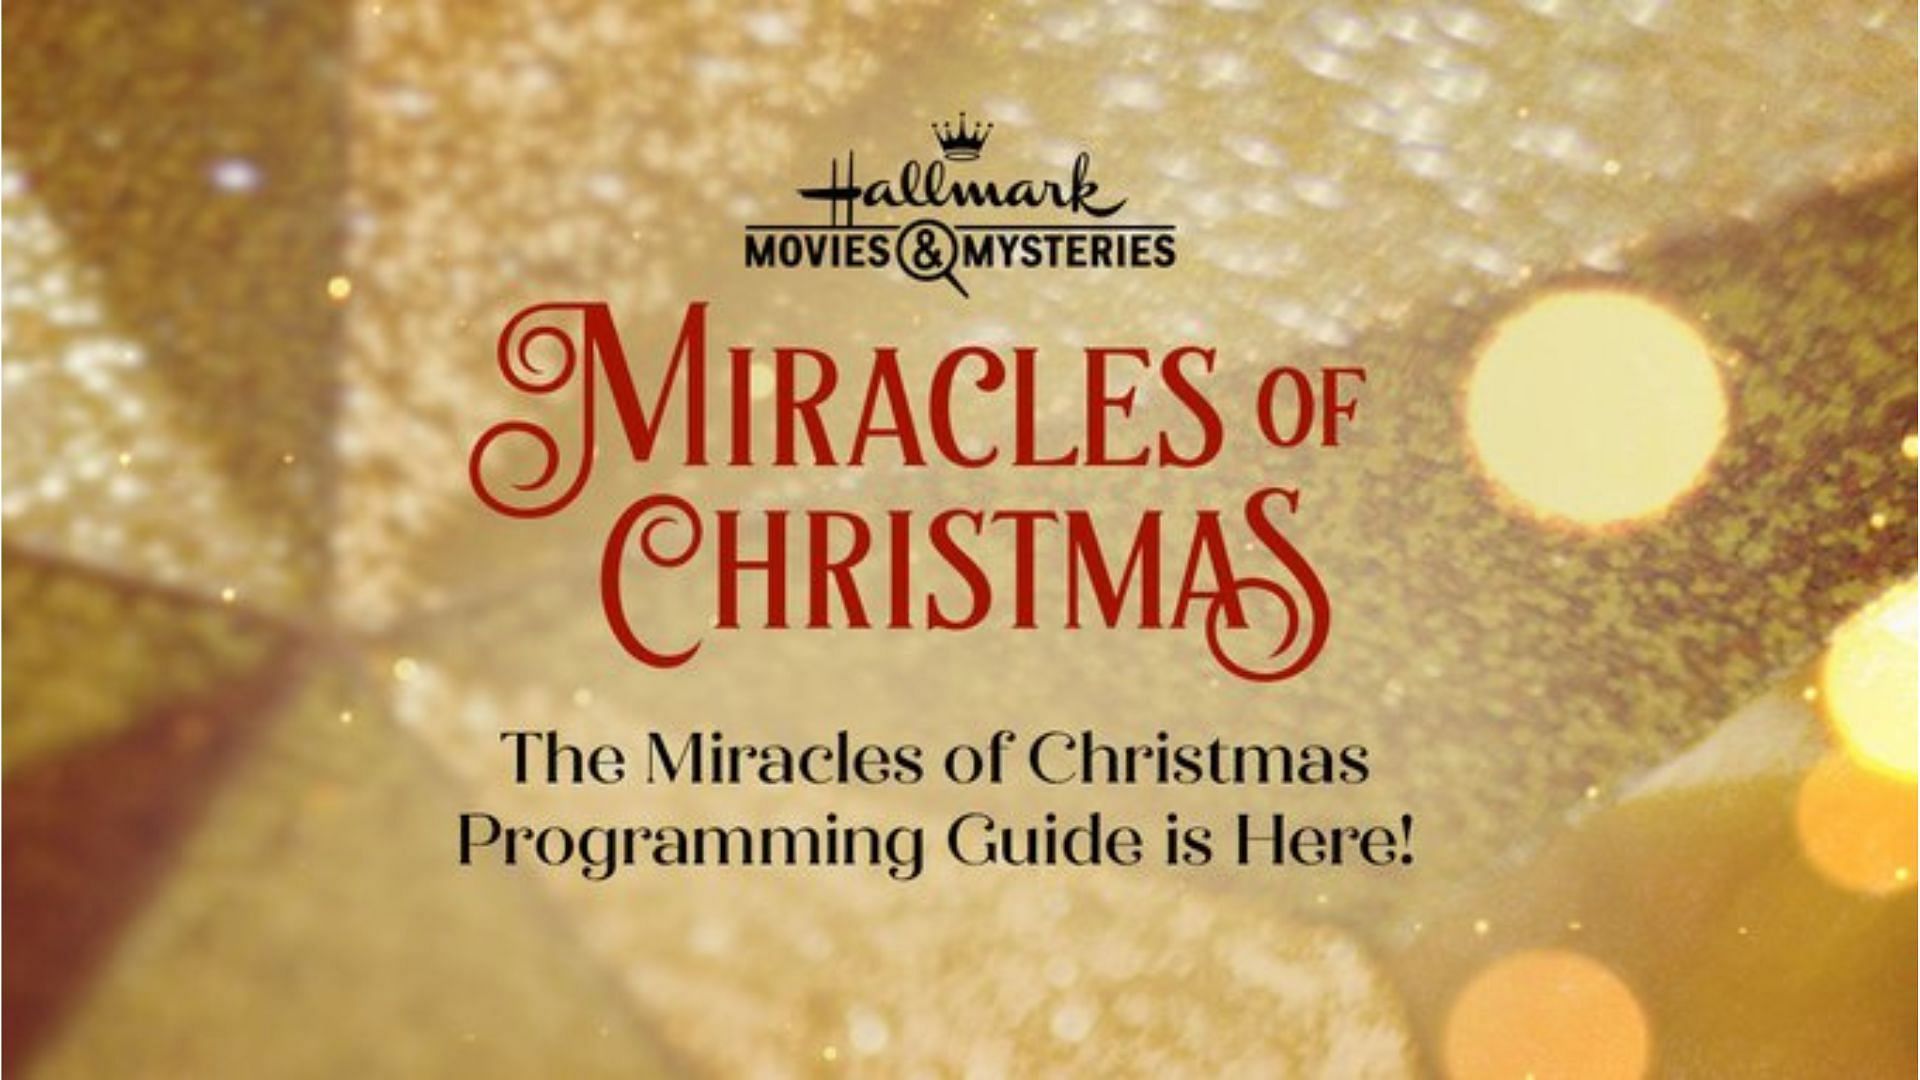 Miracles of Christmas (Image via Showbiz Cheat Sheet)